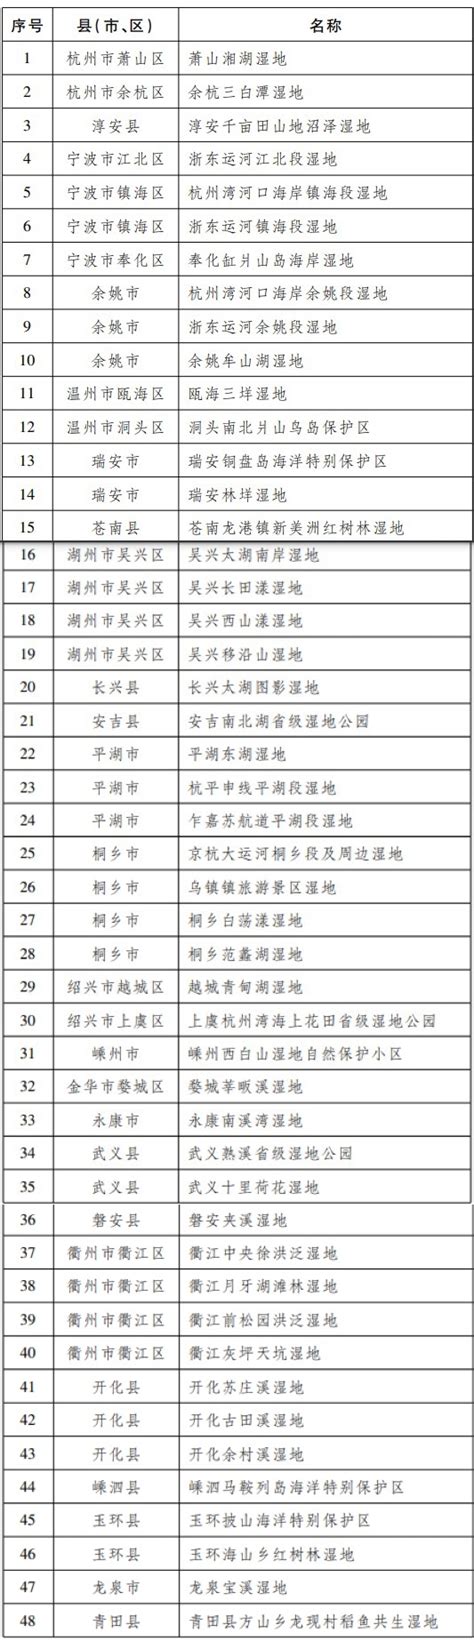 浙江省人民政府办公厅关于公布第二批省重要湿地名录的通知